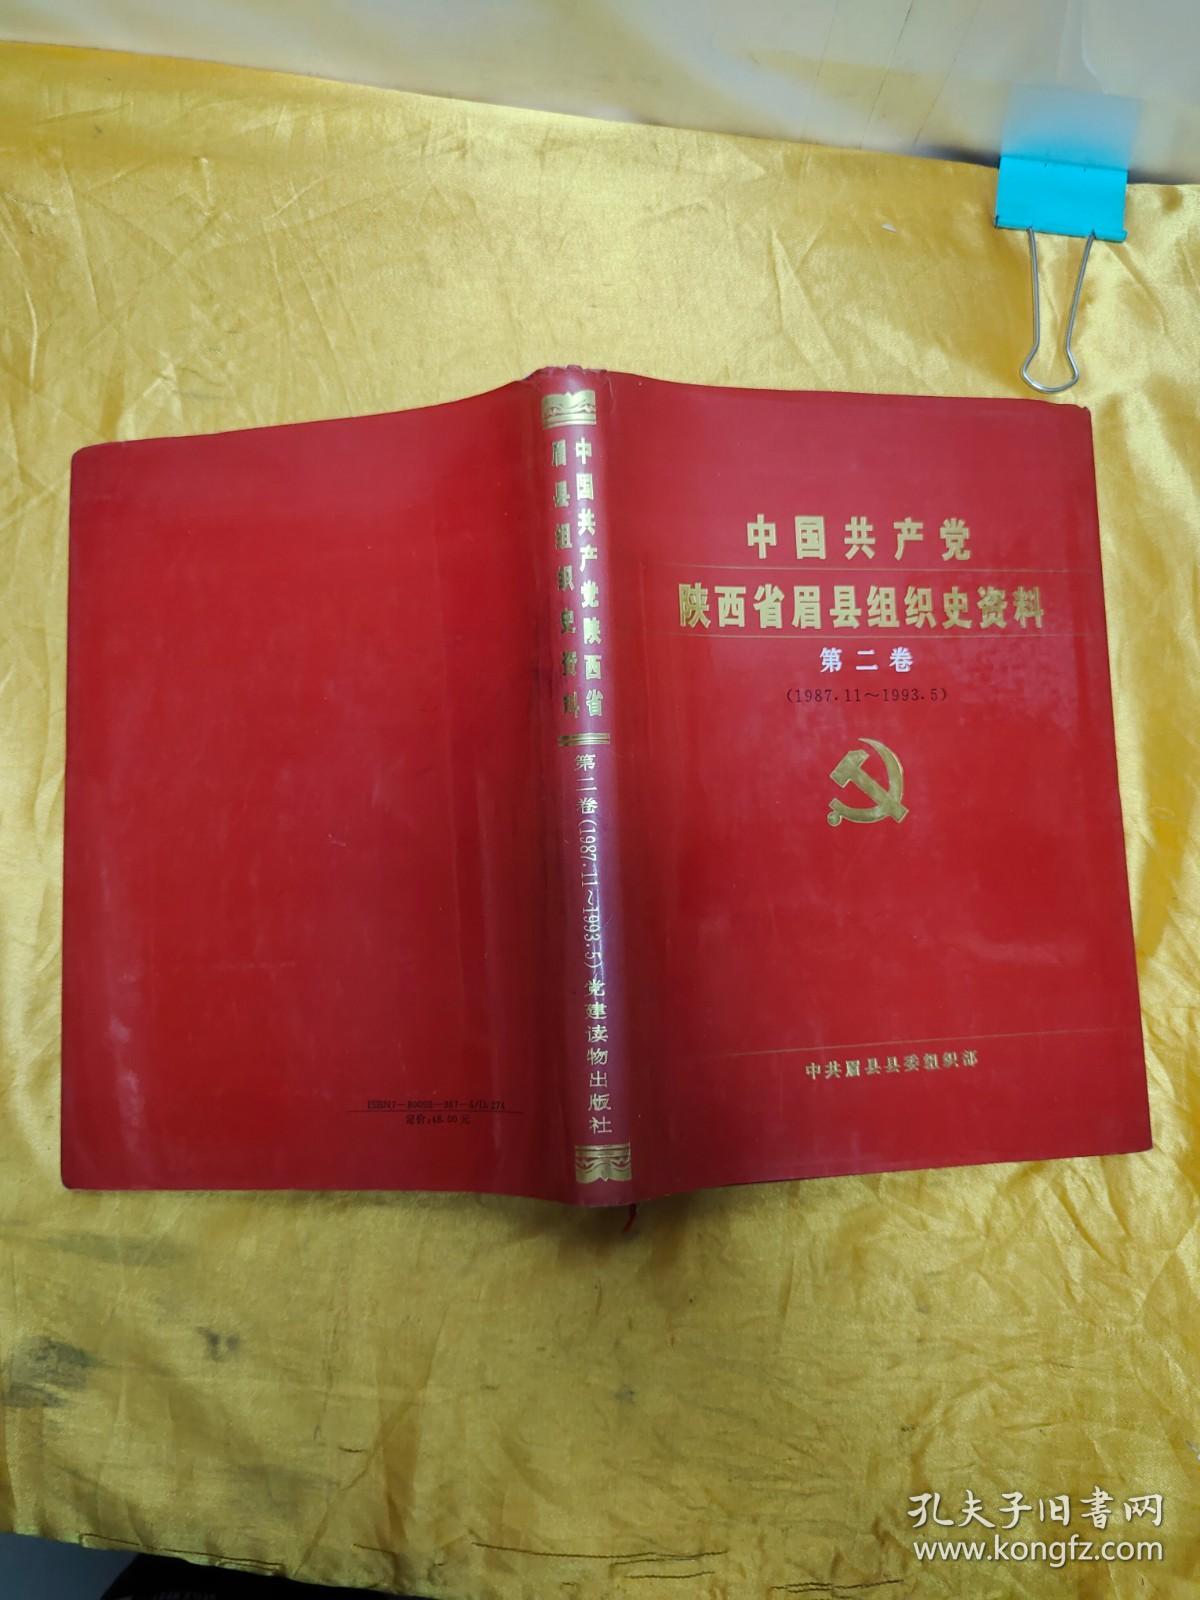 中国共产党陕西省眉县组织史资料（第二卷）1987.11-1993.5